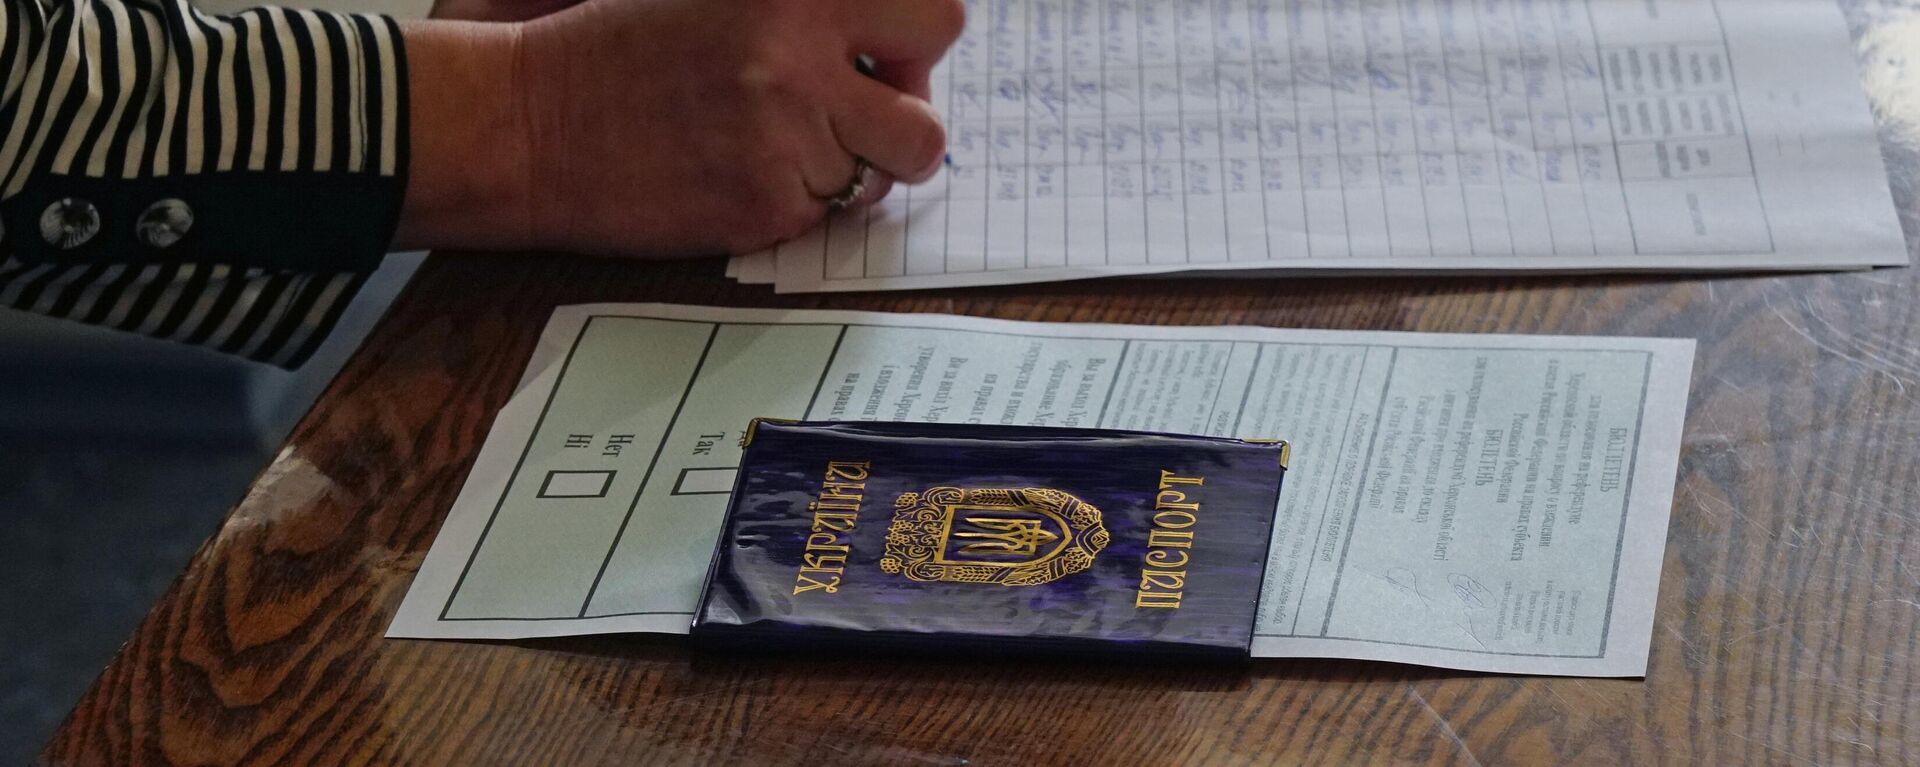 Mulher se registra no local de votação em Kherson no referendo sobre a adesão da região de Kherson à Rússia, em 23 de setembro de 2022 - Sputnik Brasil, 1920, 27.09.2022